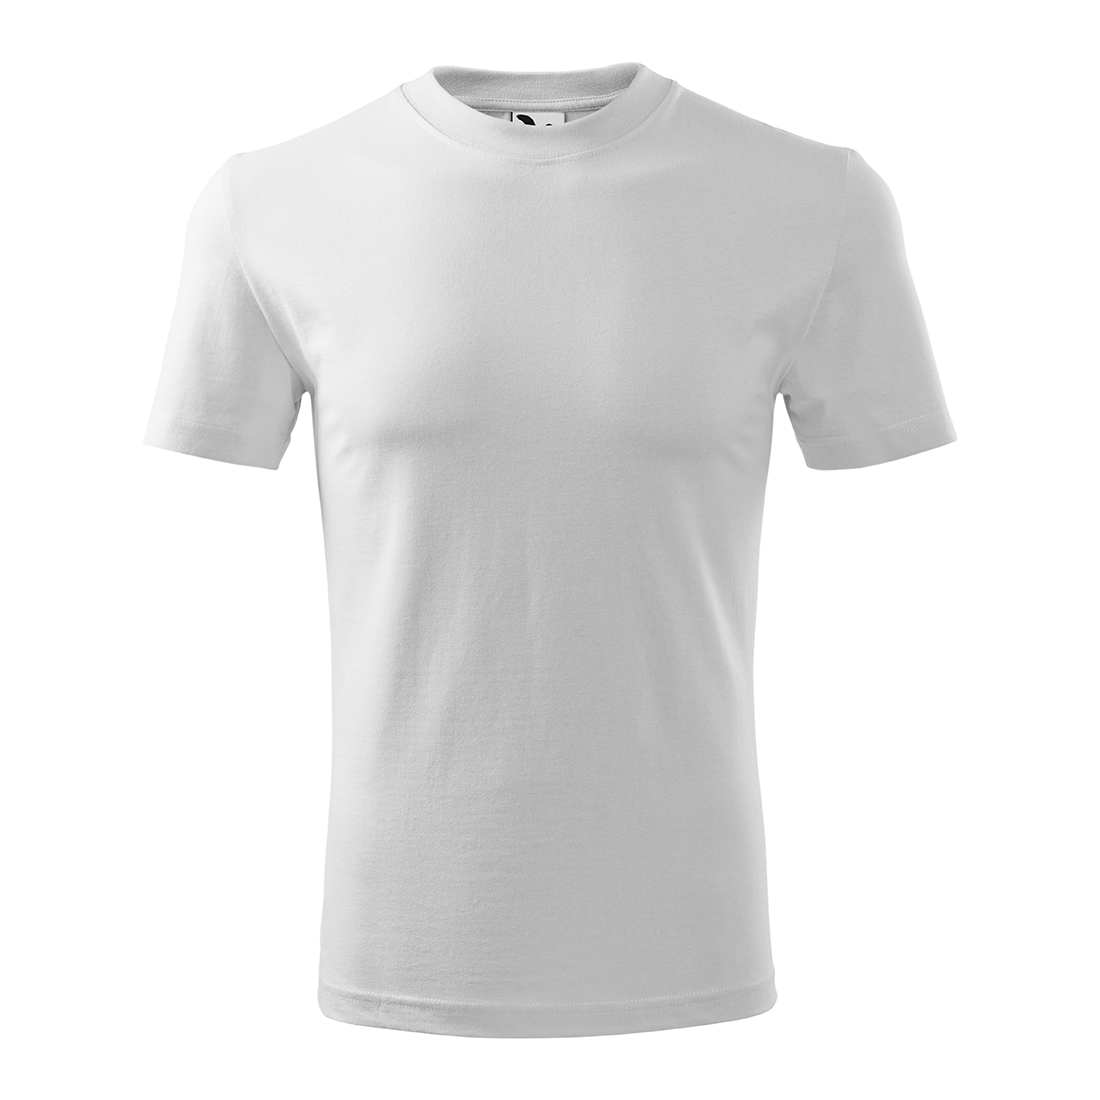 Camiseta unisex clásica - Ropa de protección